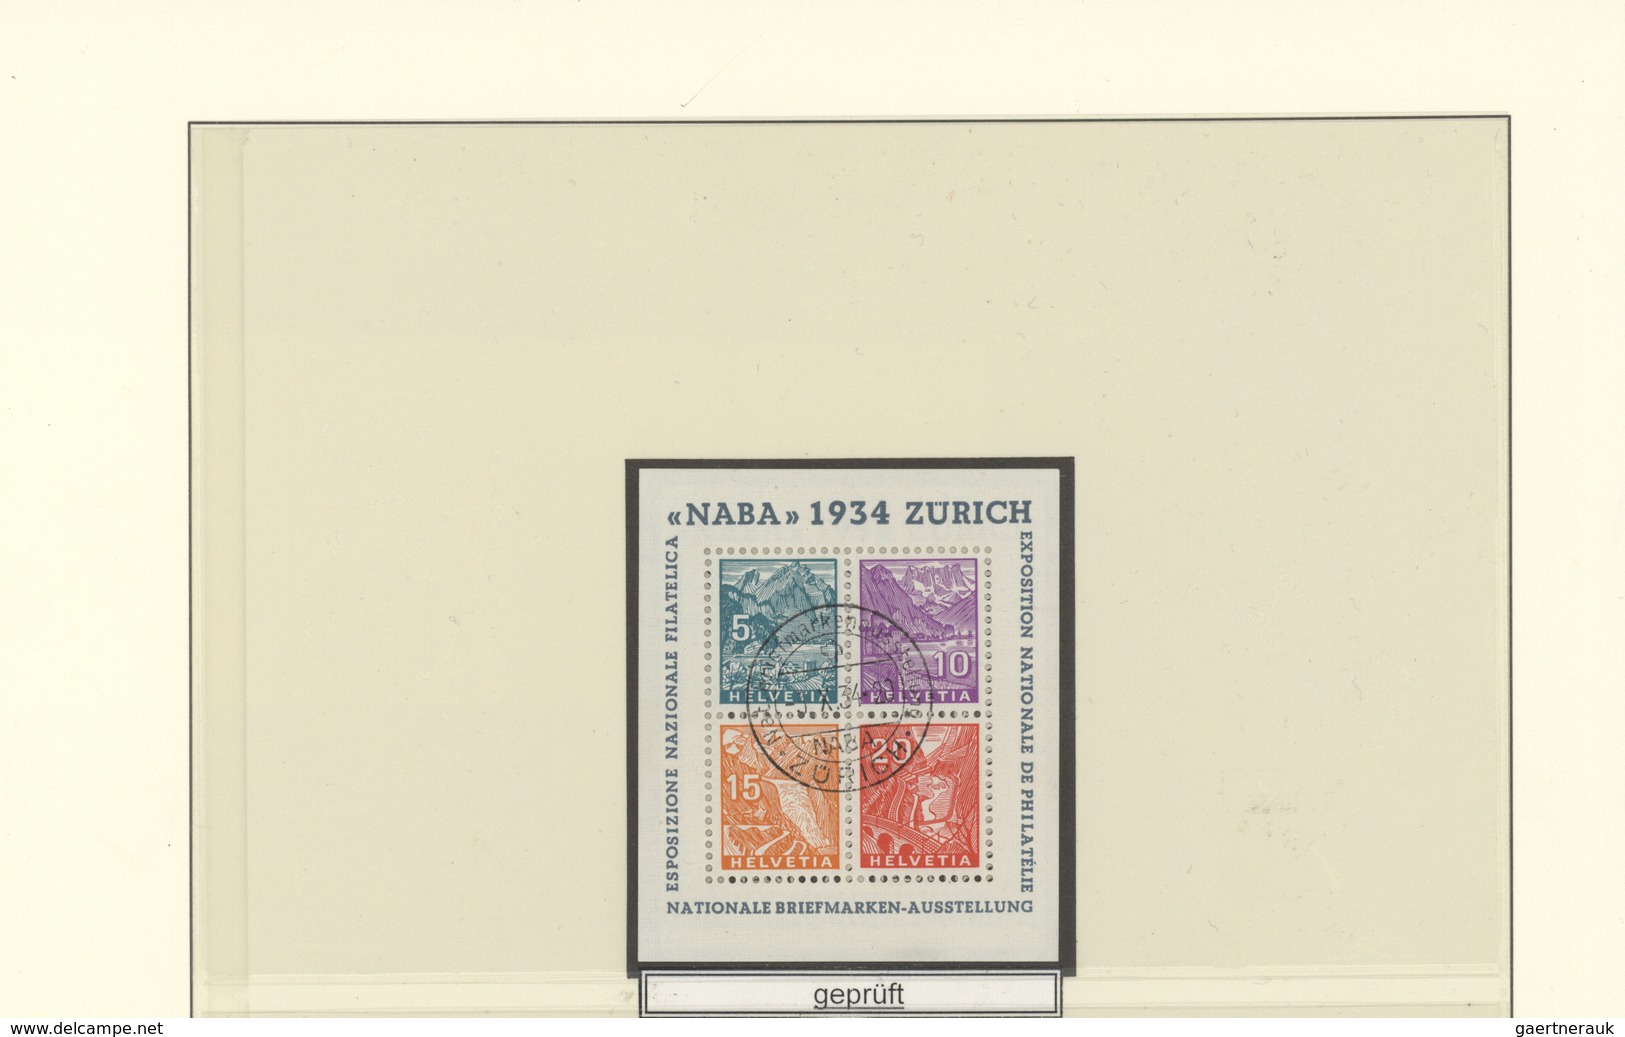 Schweiz: 1908-1992 Umfangreiche Sammlung von überwiegend gestempelten Marken und Blocks sowie einer